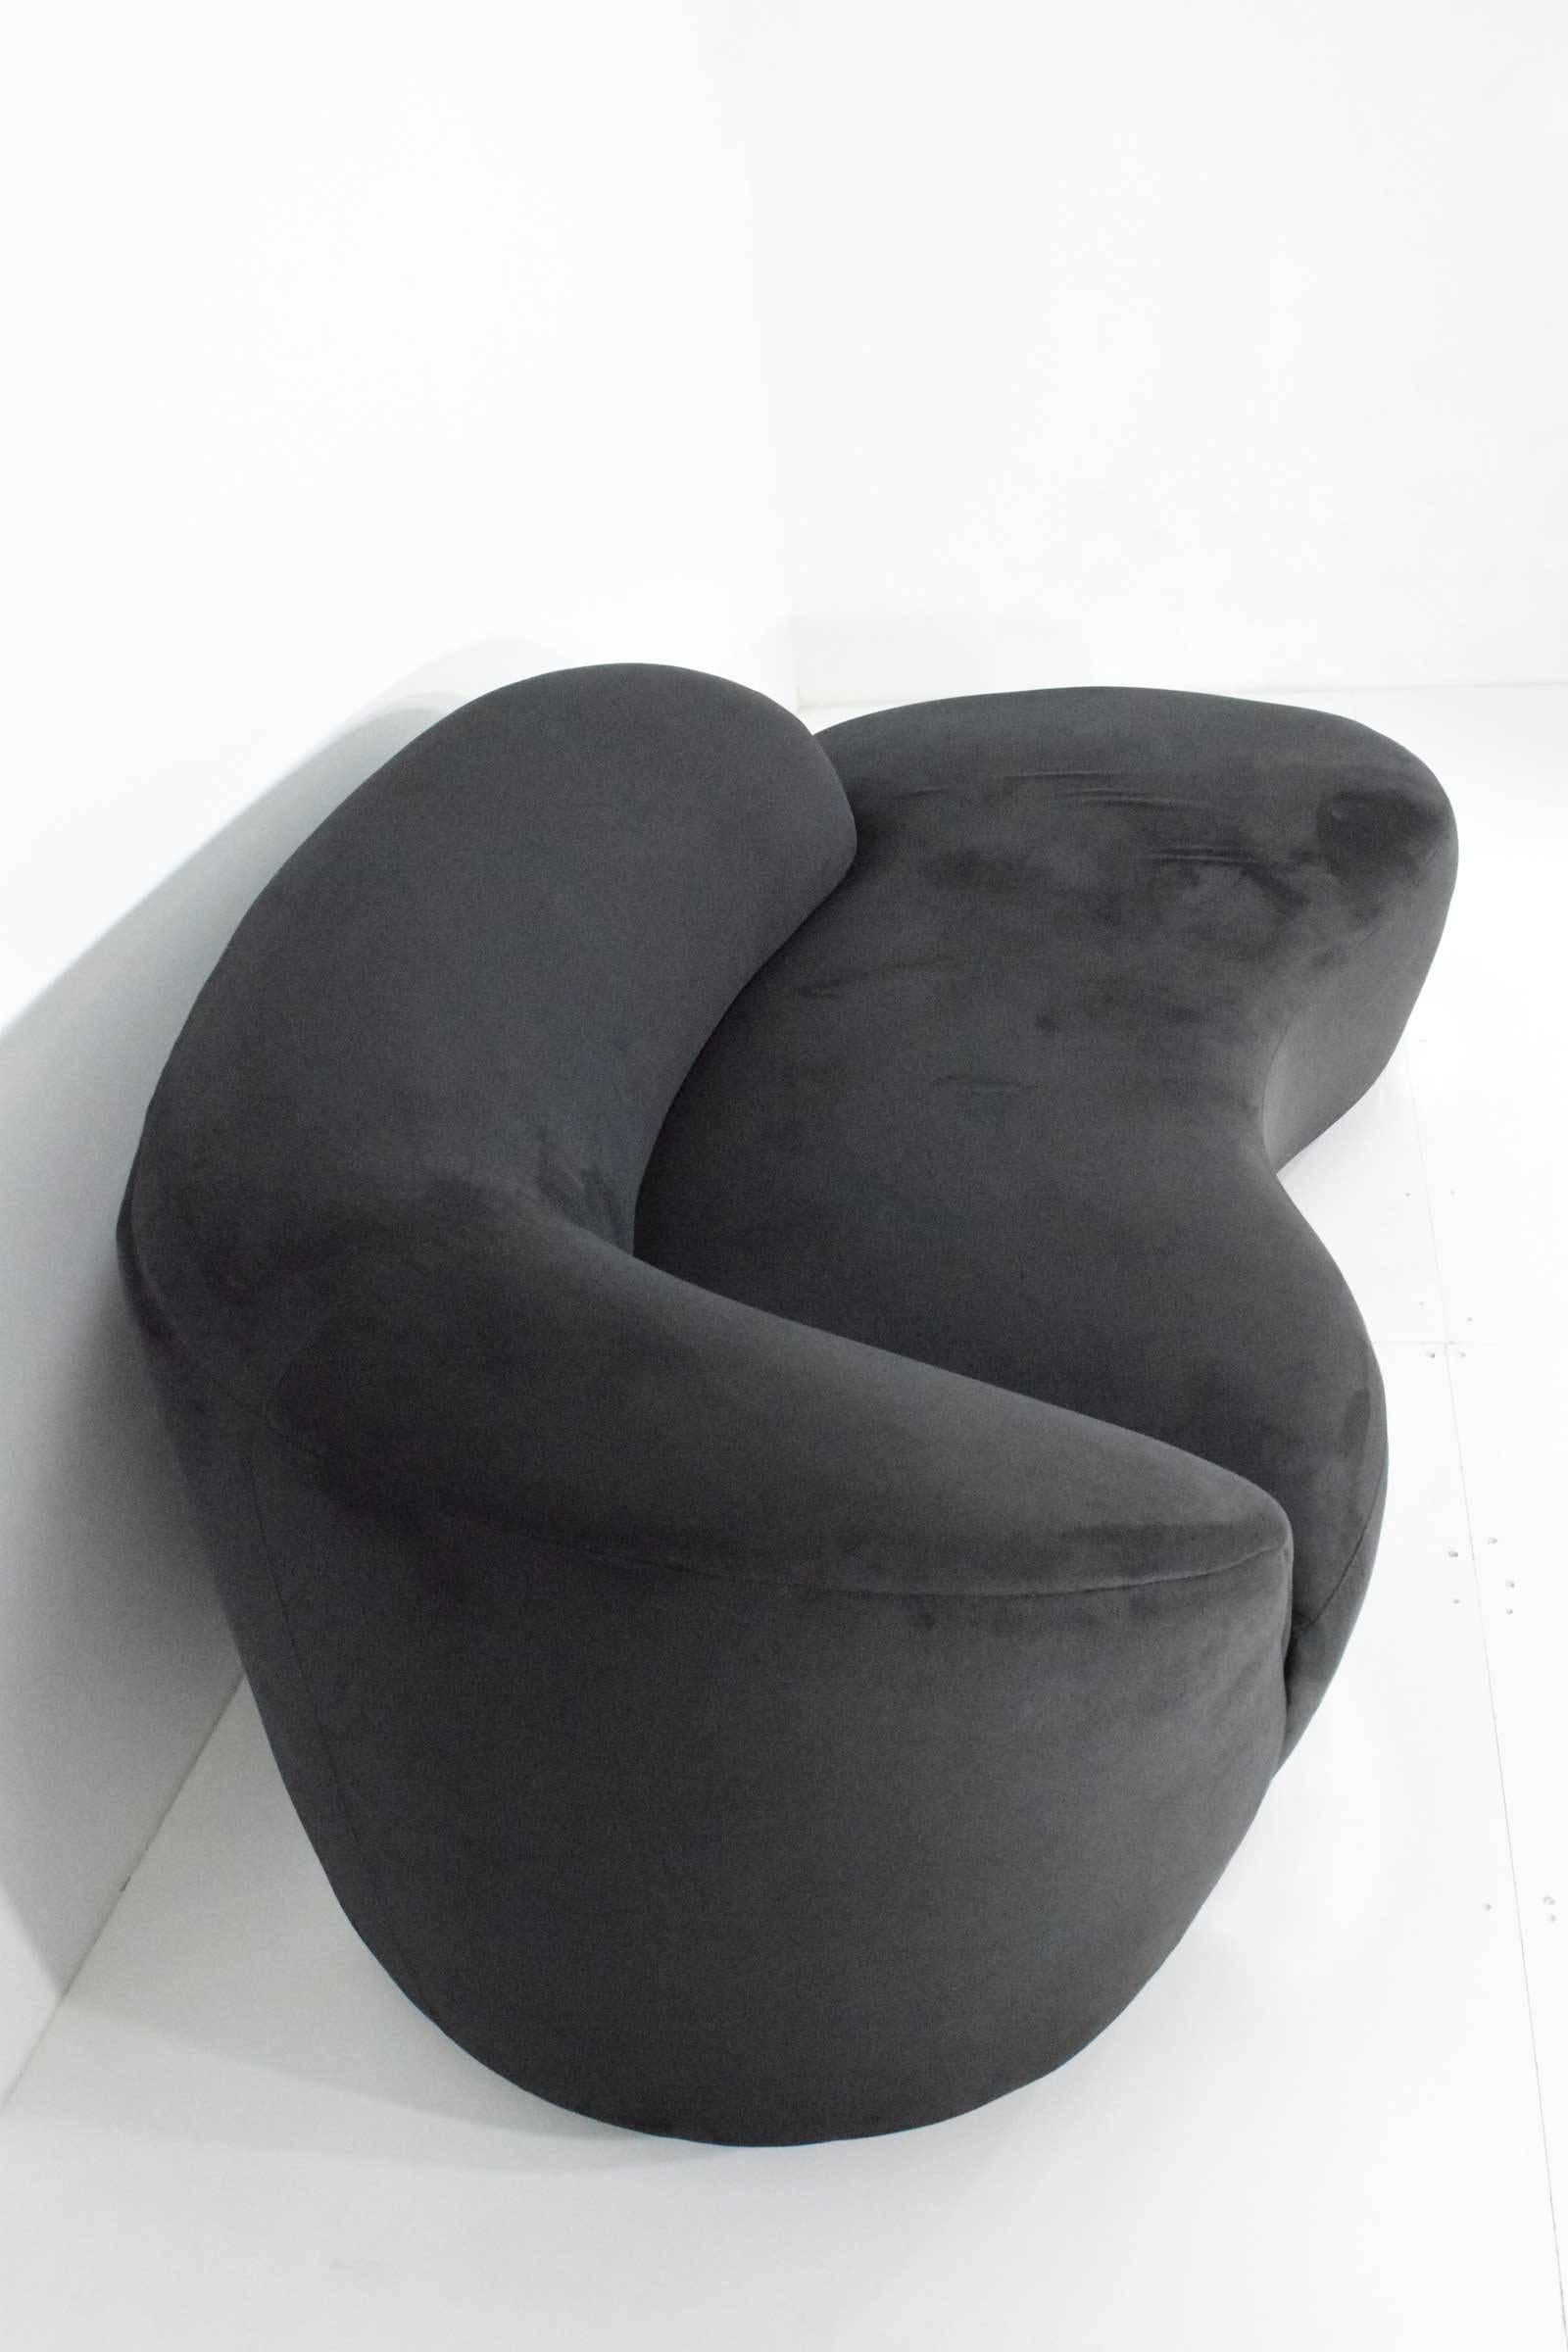 Ultrasuede Vladimir Kagan Style Cloud Serpentine Sofa